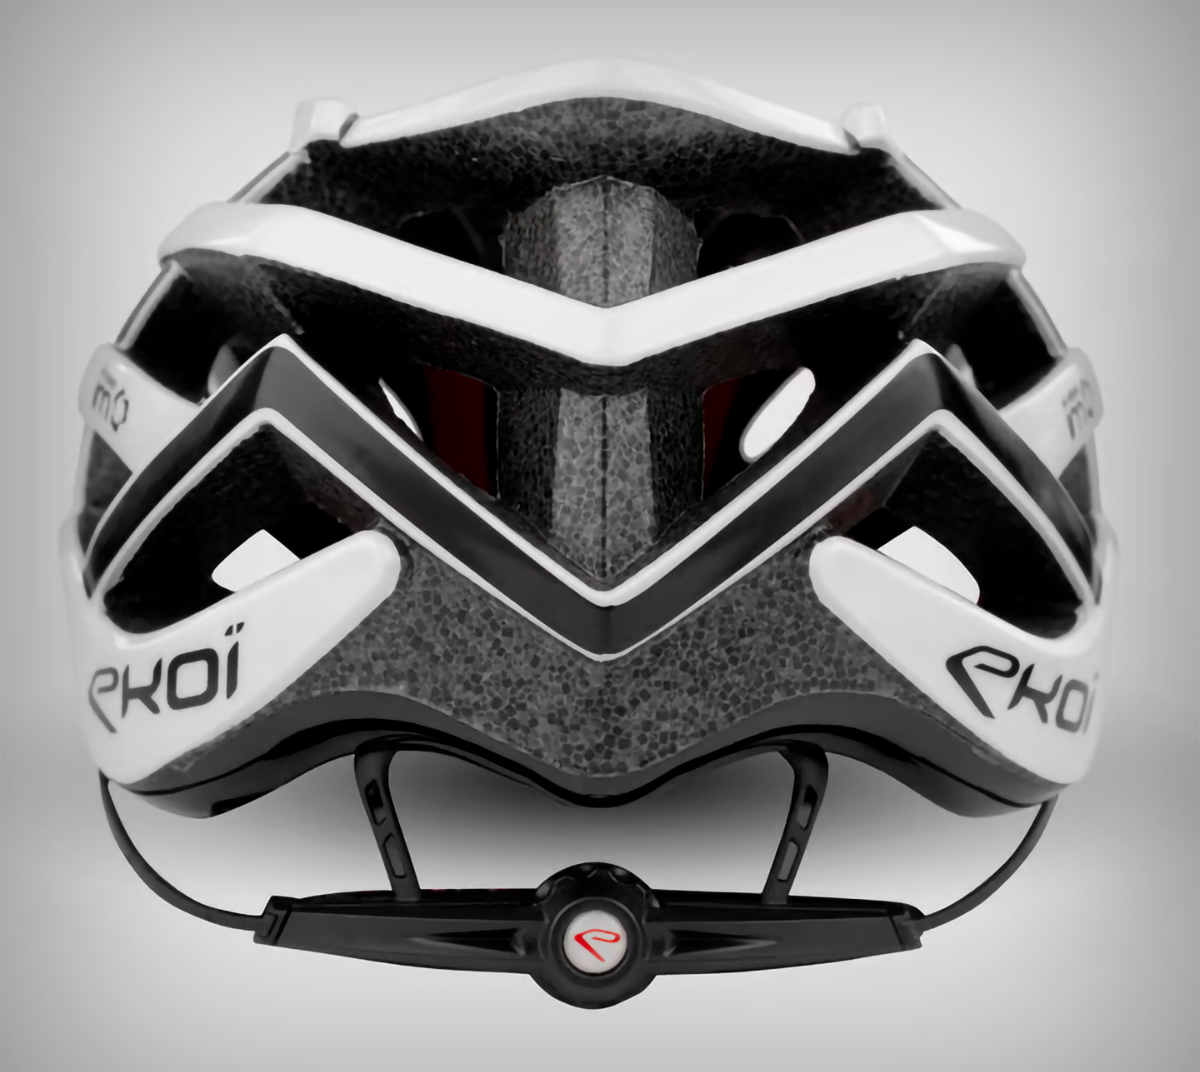 El Ekoï Corsa Light, el casco superventas de la marca, estrena nueva estética y un cierre magnético